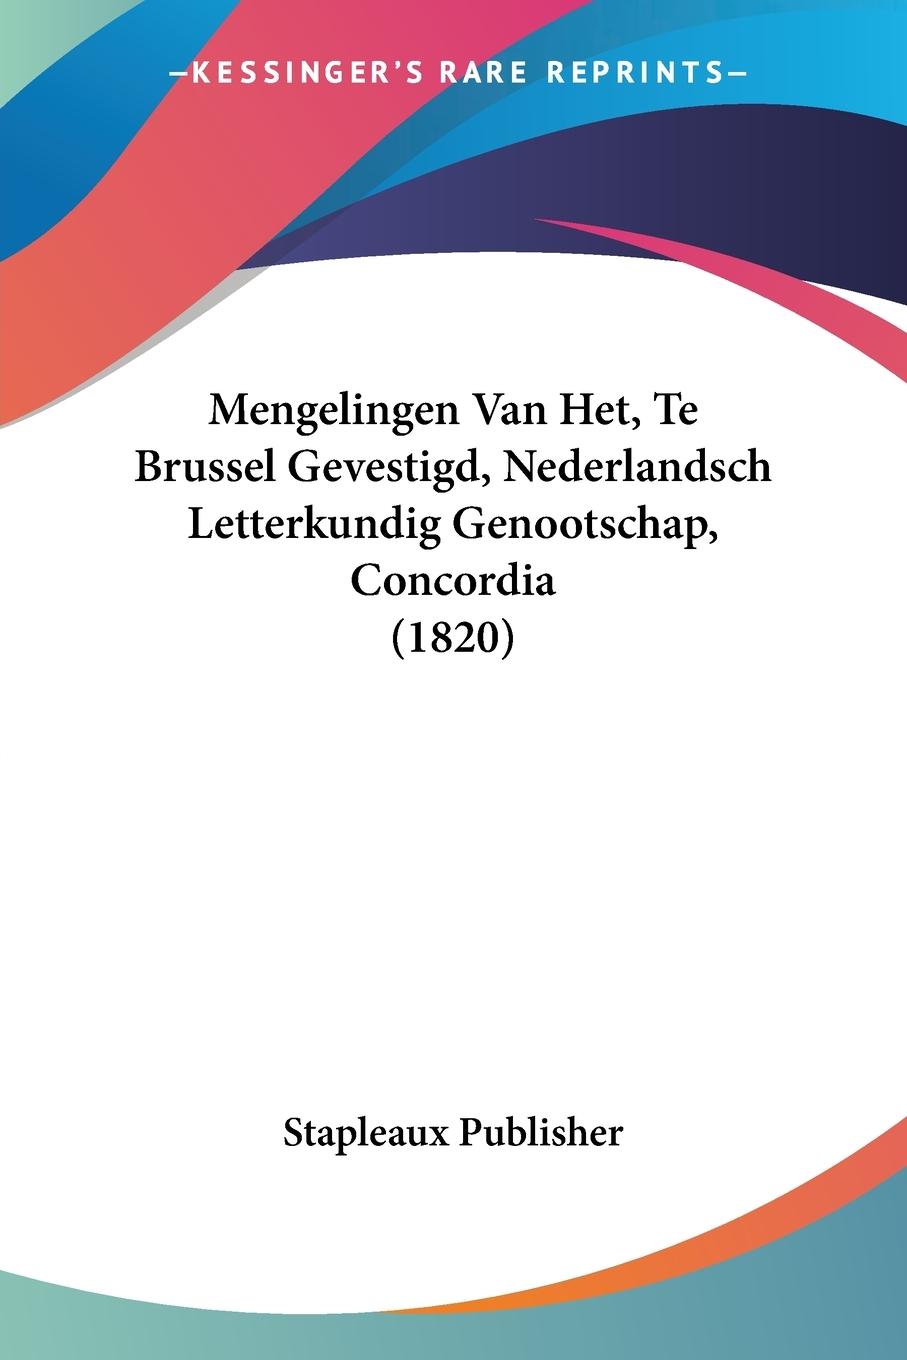 Mengelingen Van Het, Te Brussel Gevestigd, Nederlandsch Letterkundig Genootschap, Concordia (1820) - Stapleaux Publisher